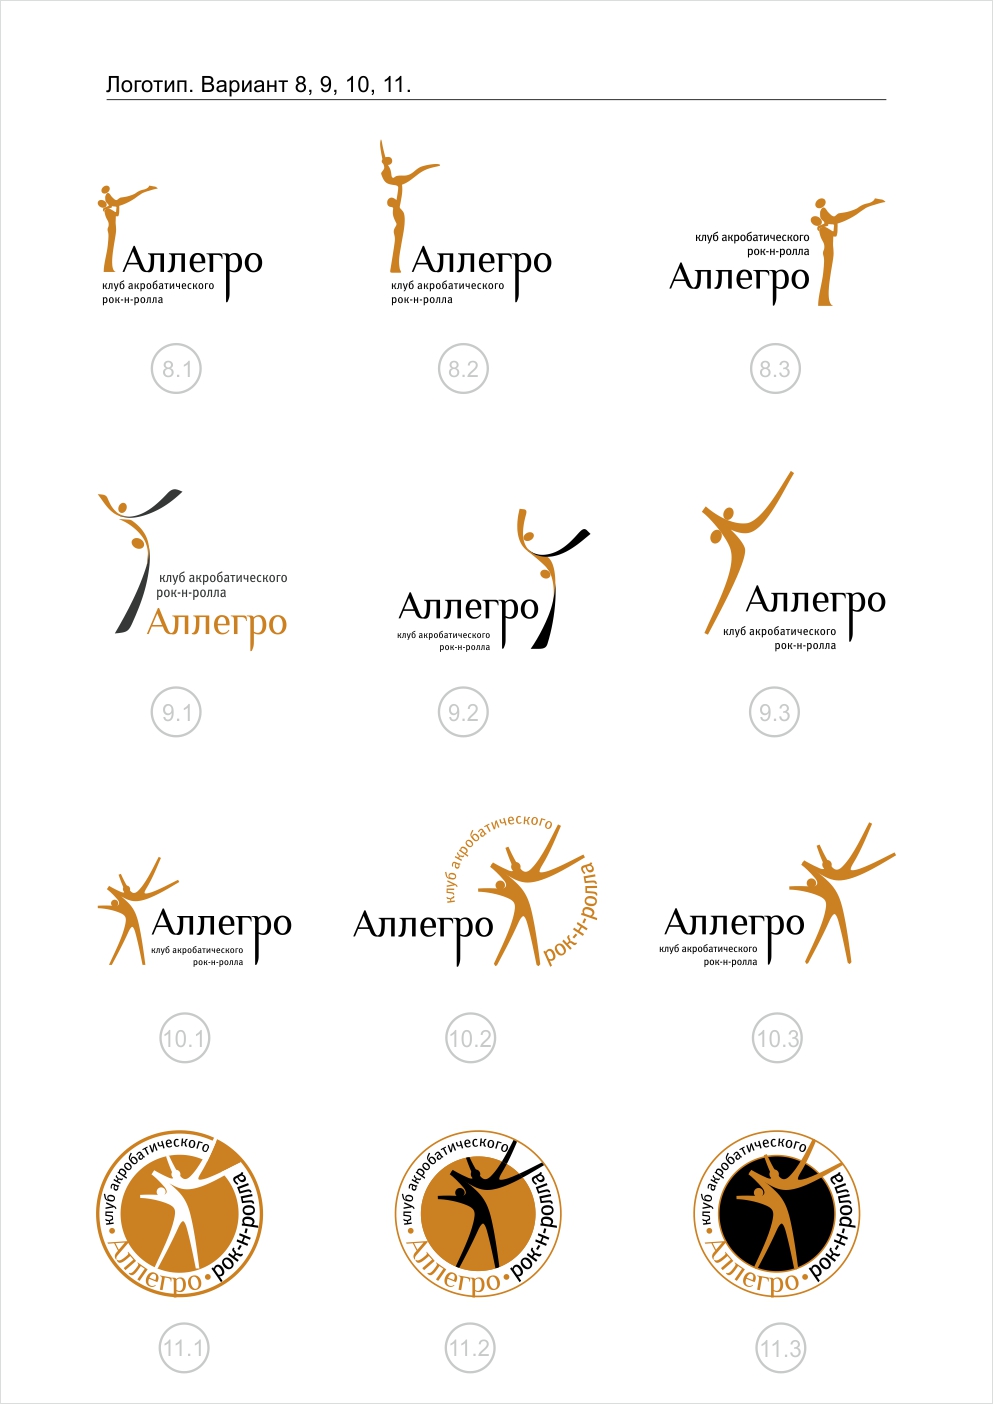 Вариант логотипа Аллегро